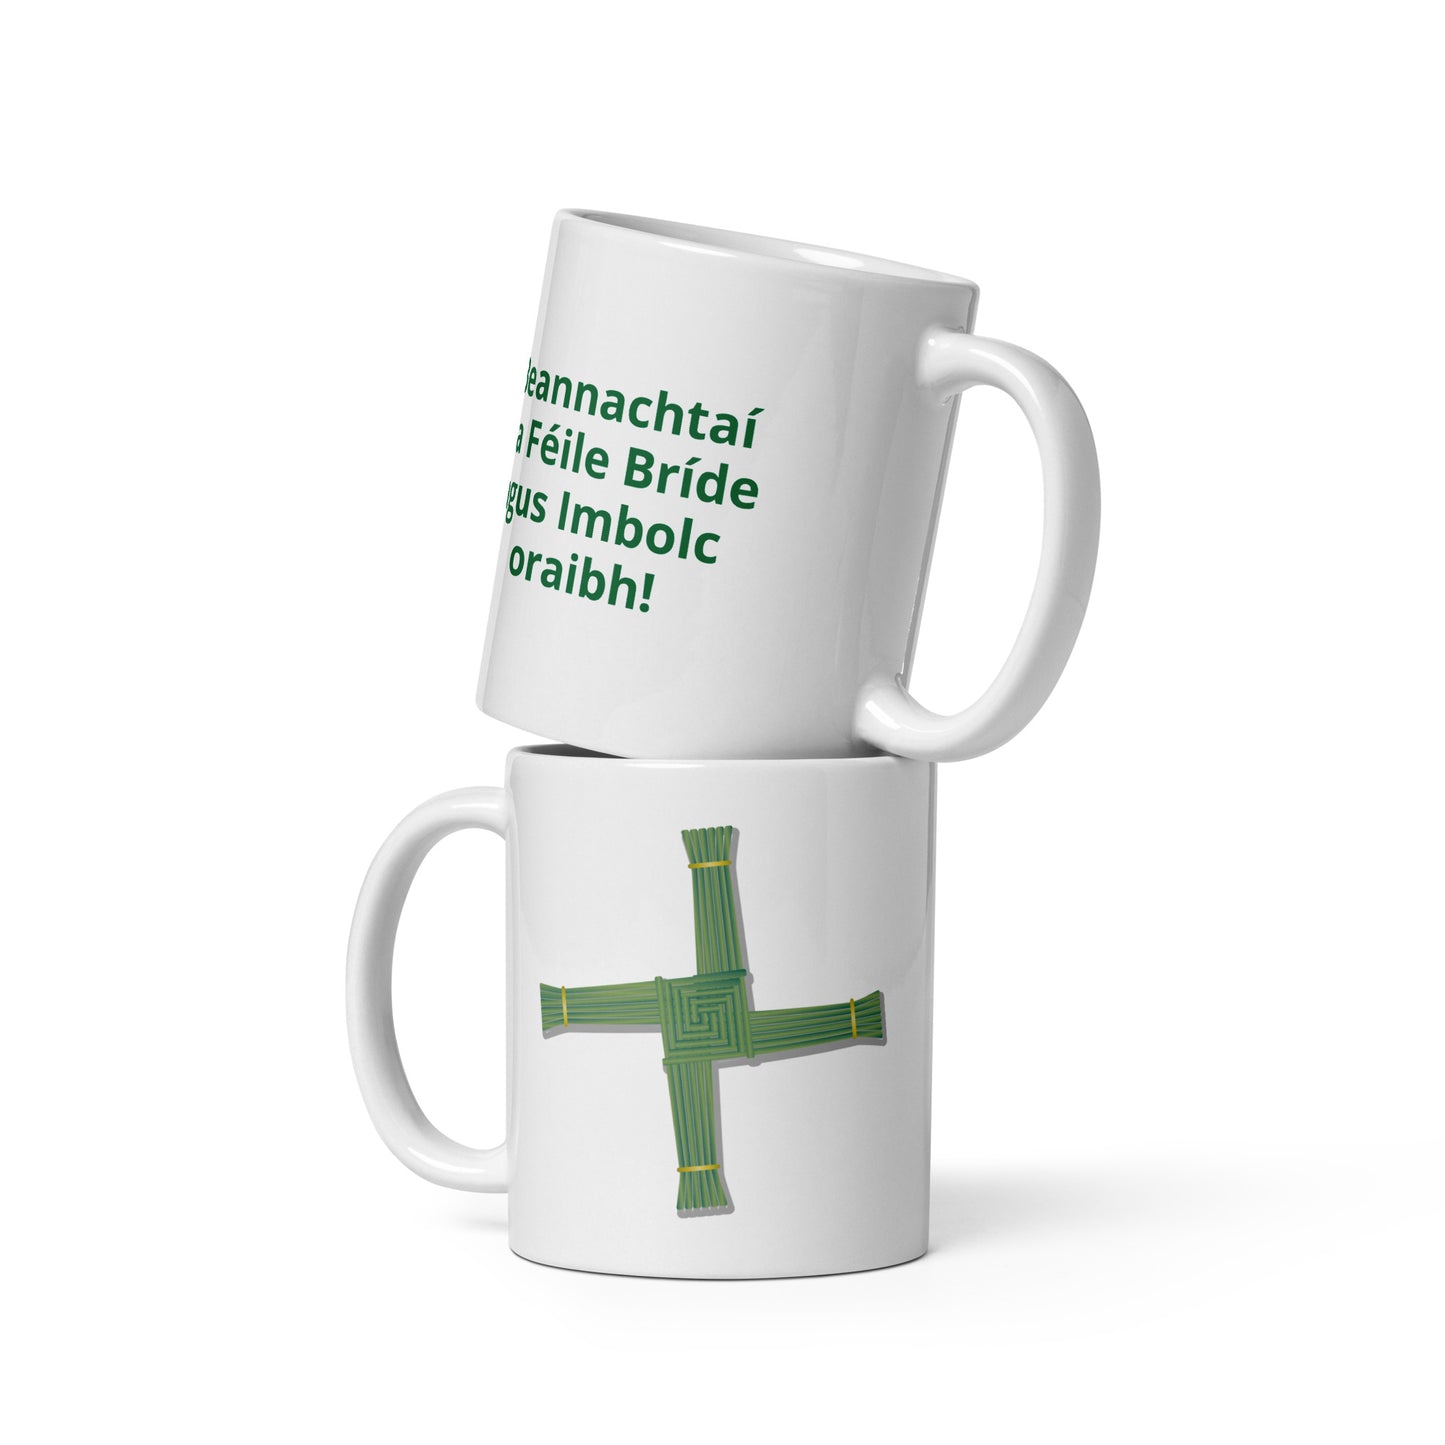 Saint Brigid's Cross white glossy mug